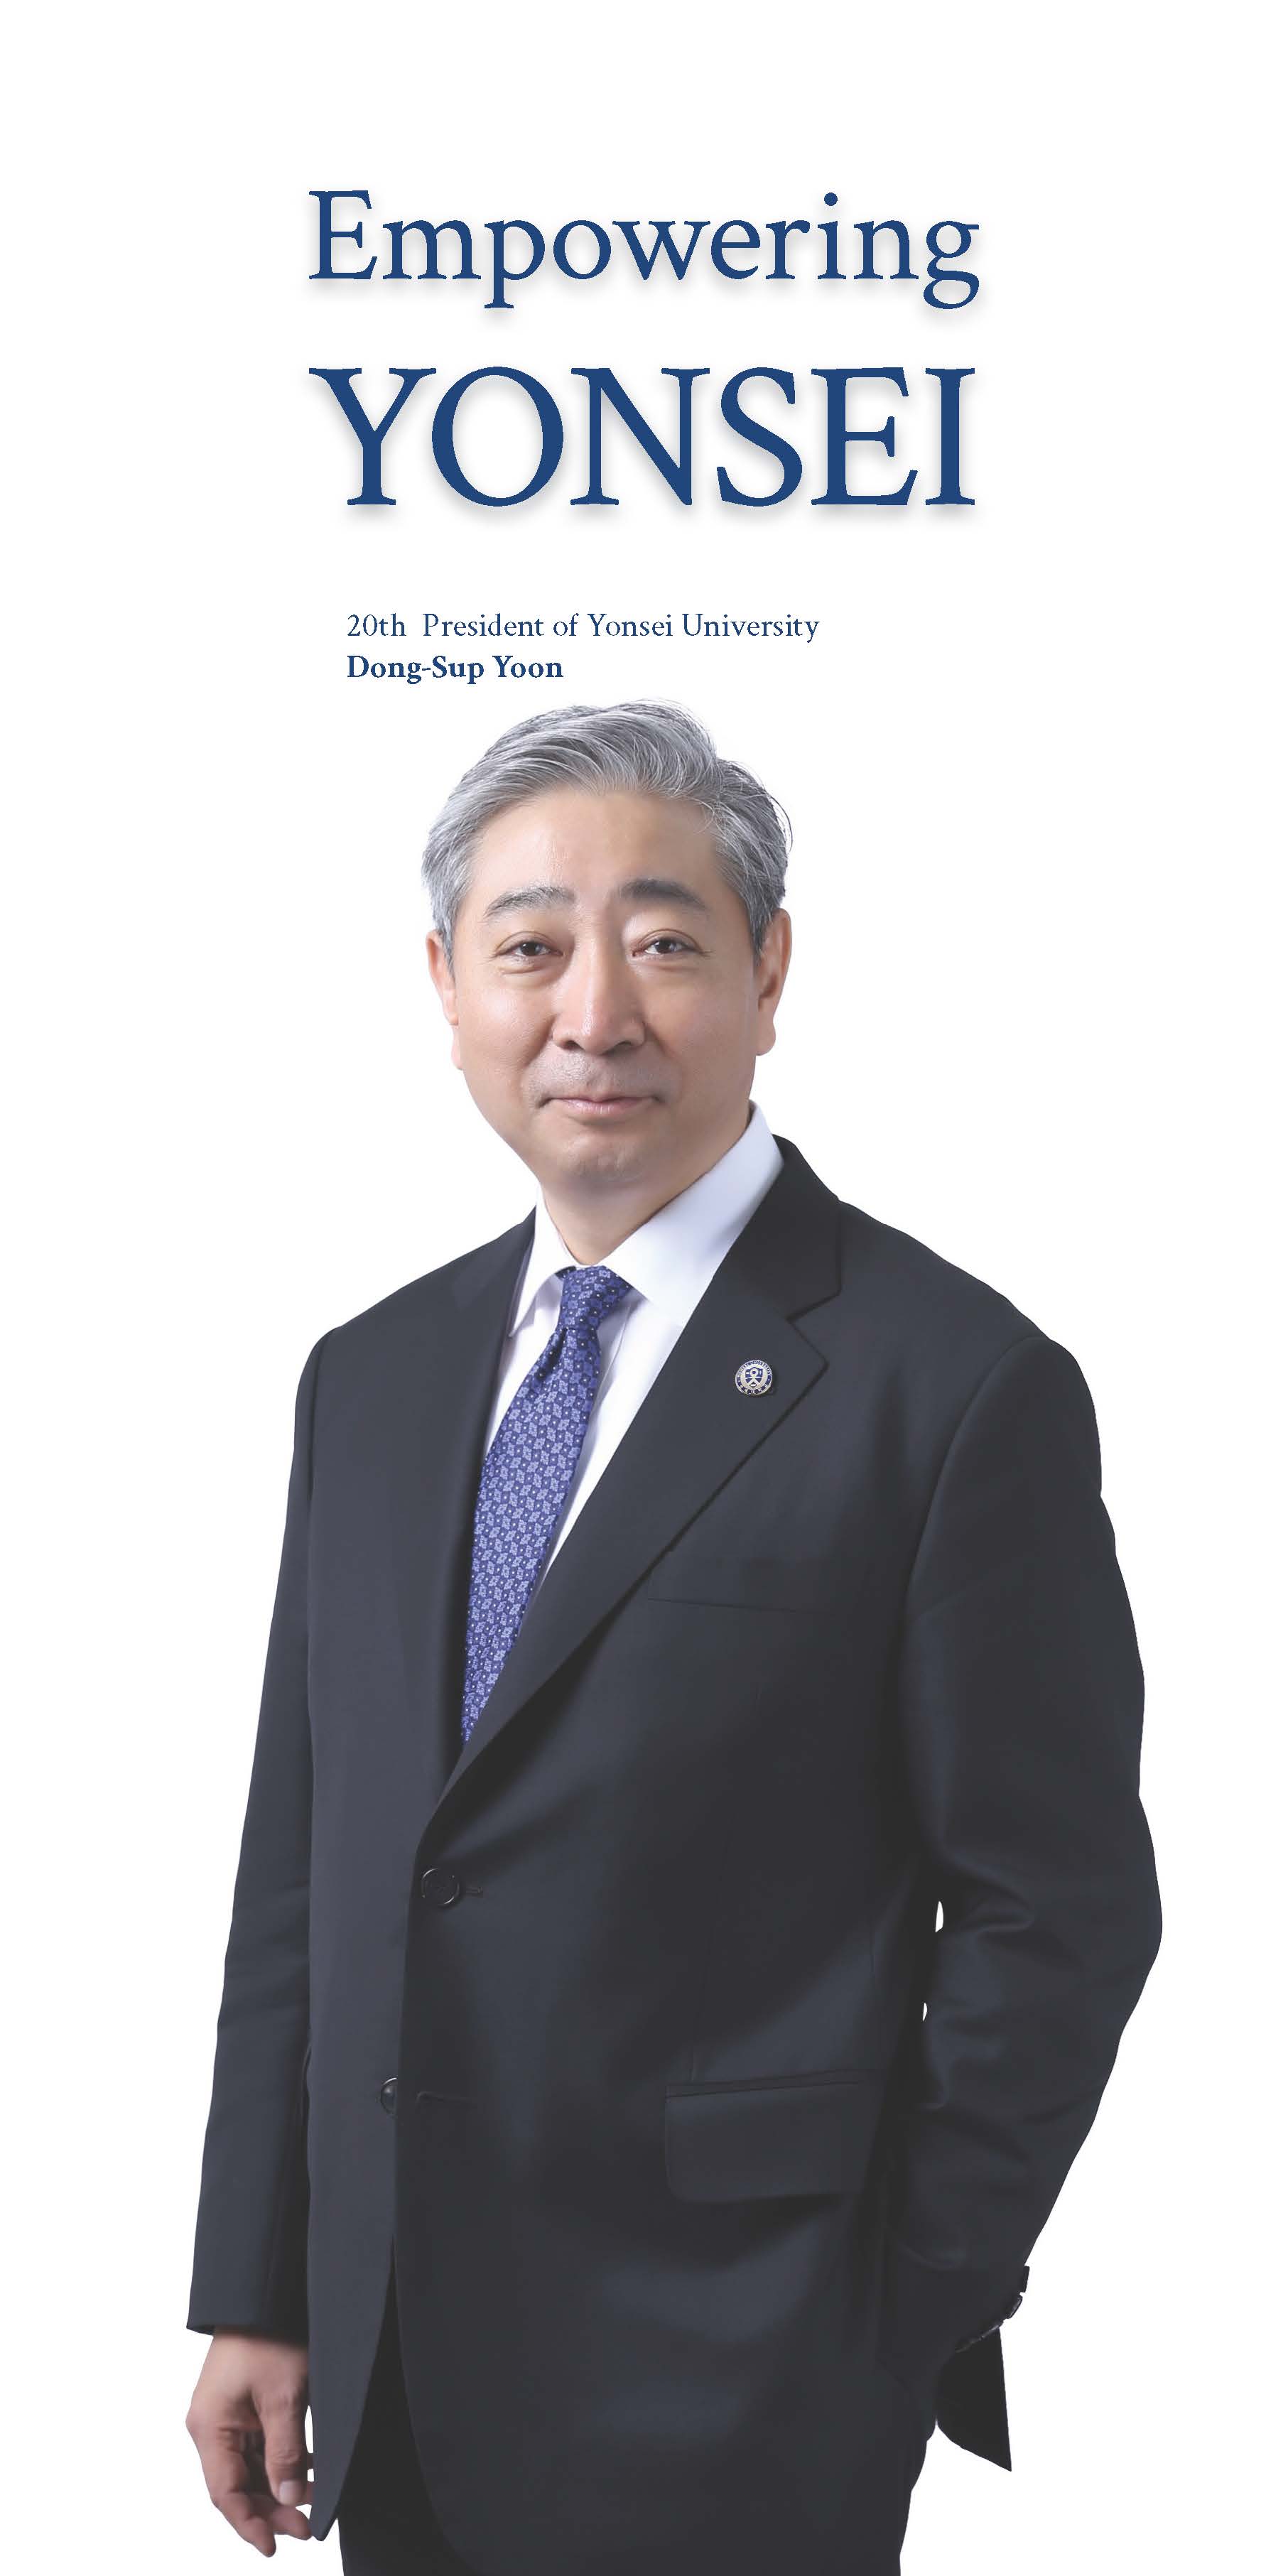 Empowering Yonsei! 20th President of Yonsei University Dong-Sup Yoon